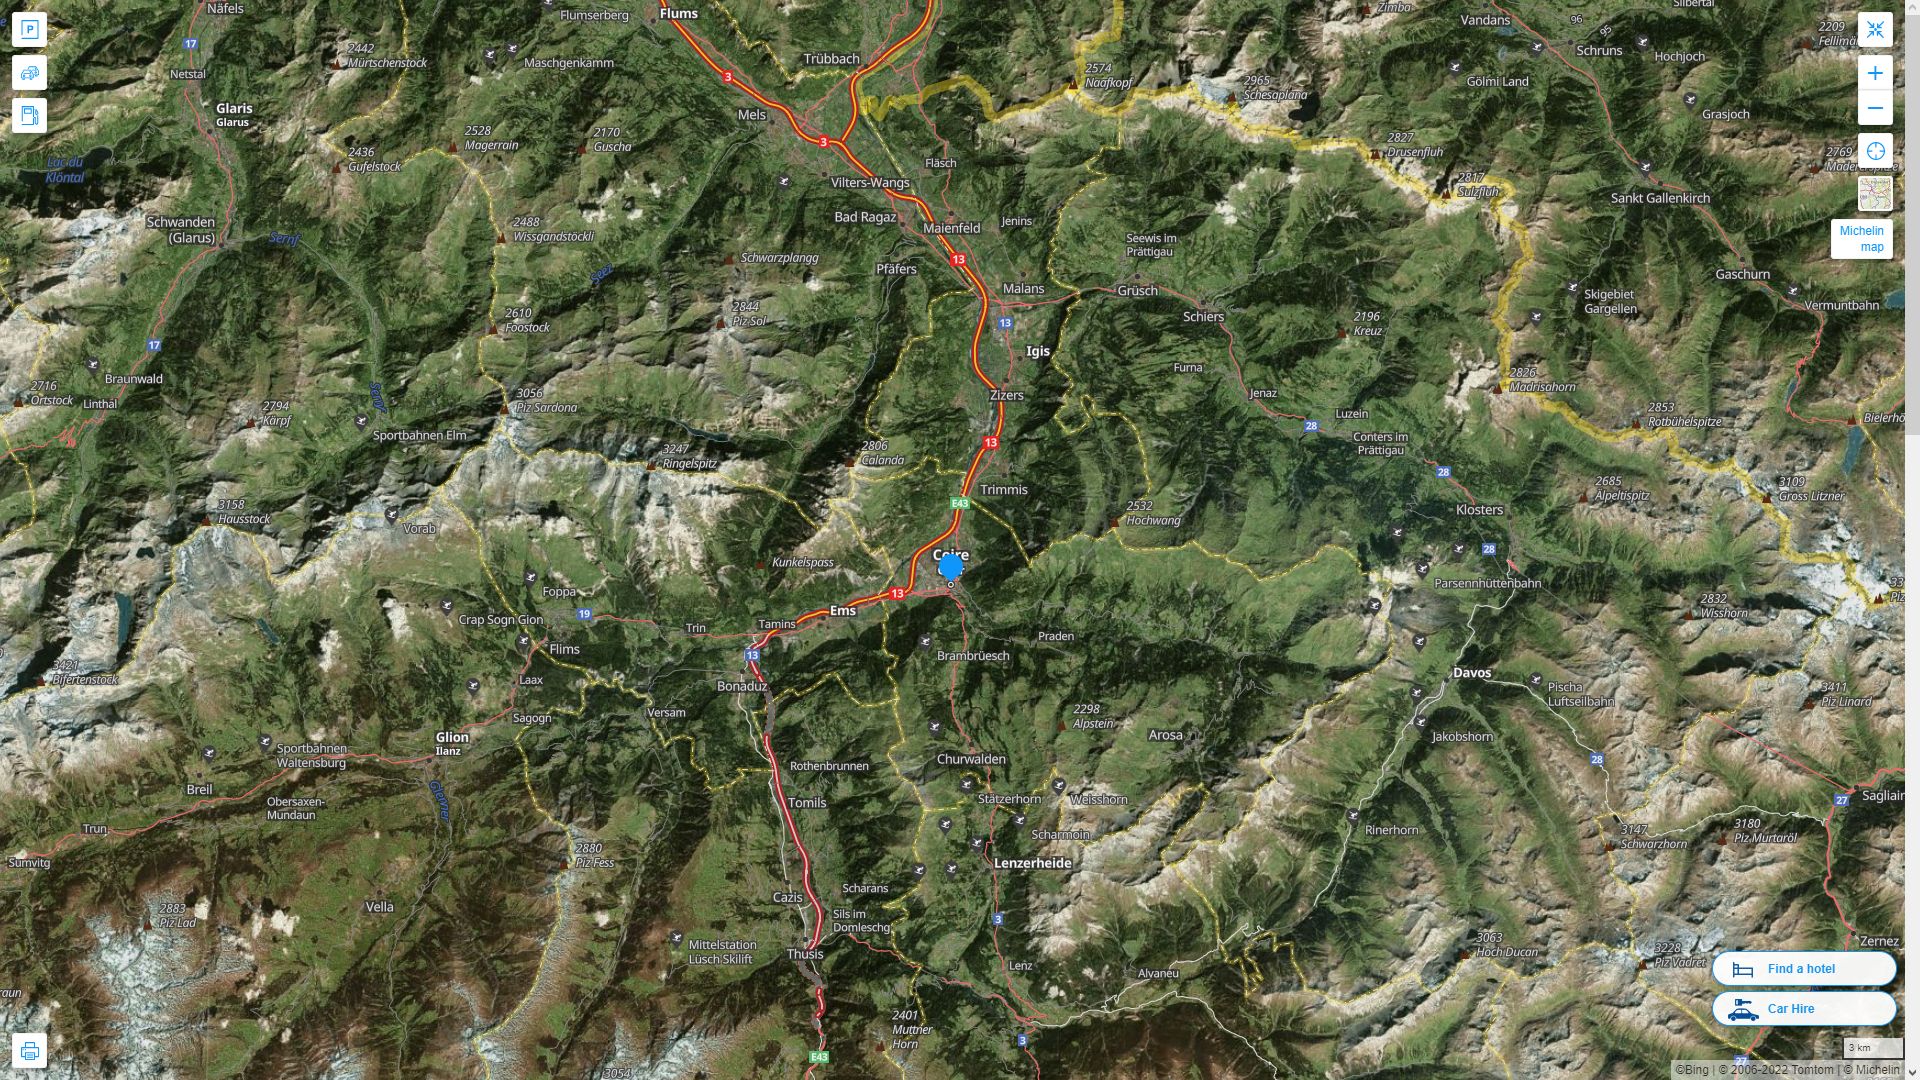 Chur Suisse Autoroute et carte routiere avec vue satellite